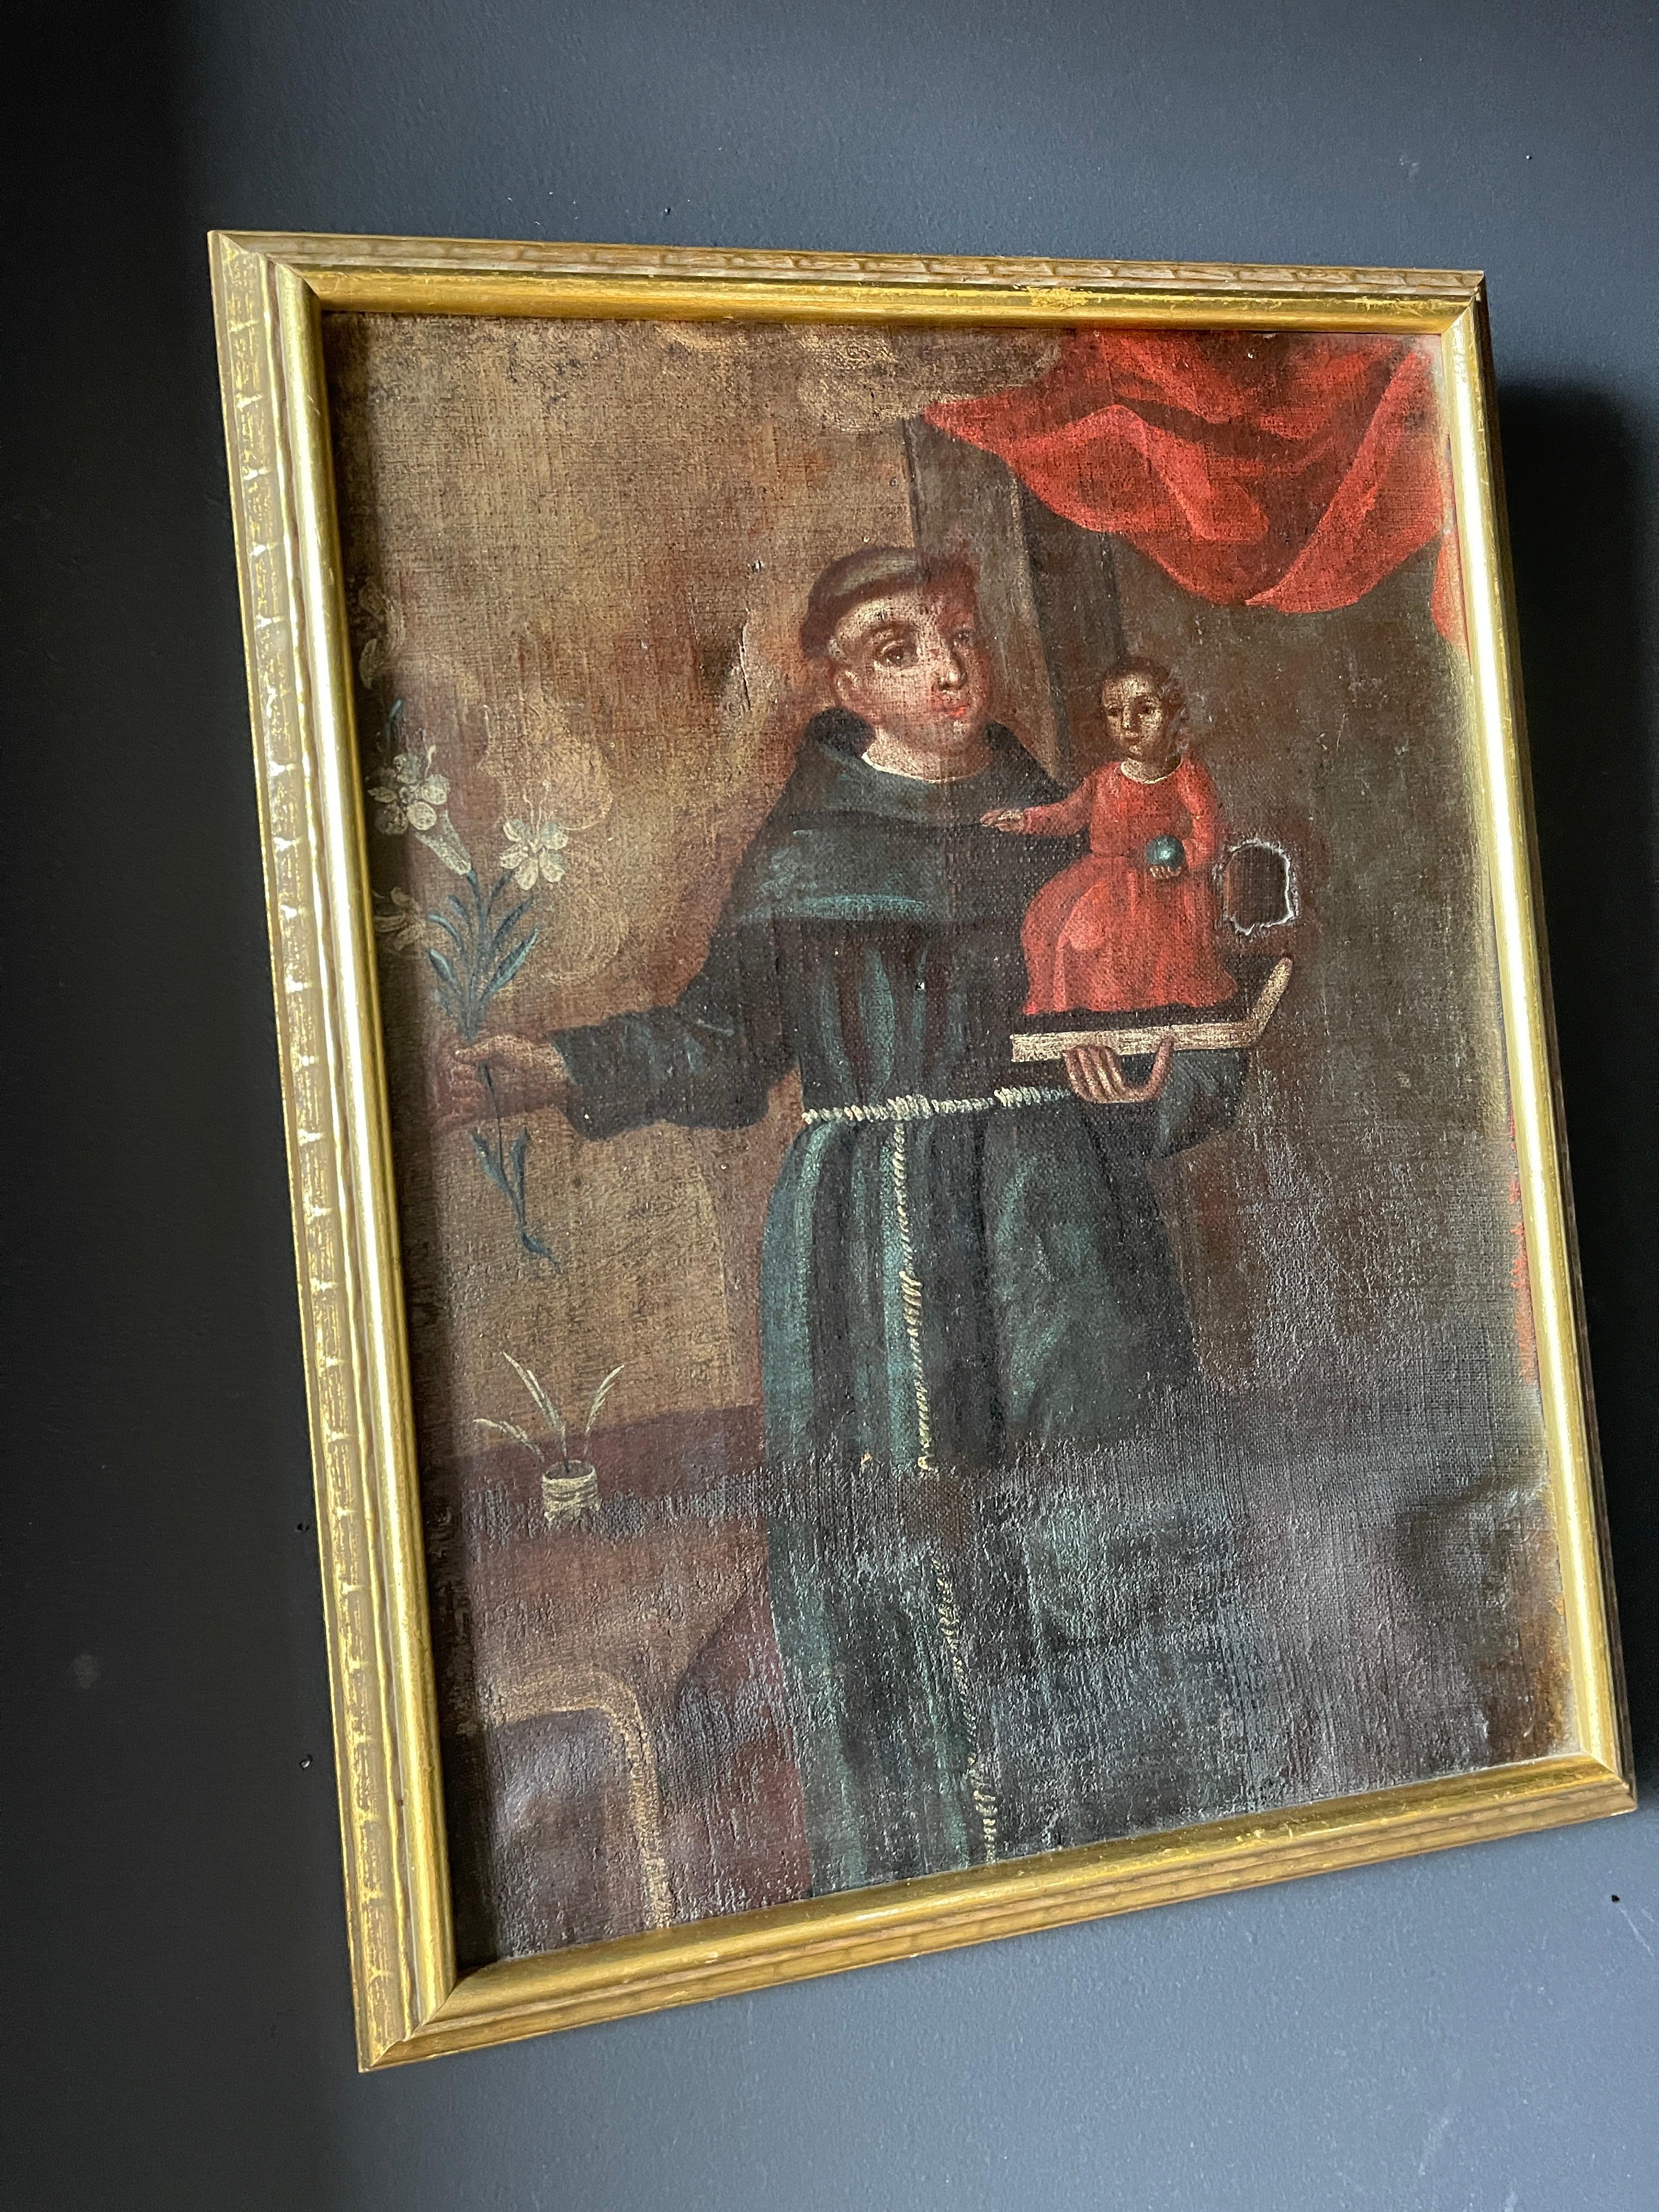 Belle huile sur toile coloniale espagnole du XVIIIe siècle représentant Saint Antoine avec l'enfant Jésus. Quelques réparations anciennes sont visibles sur les photos. Encadré avec un cadre en bois doré.

Saint Antoine de Padua est né et a été élevé